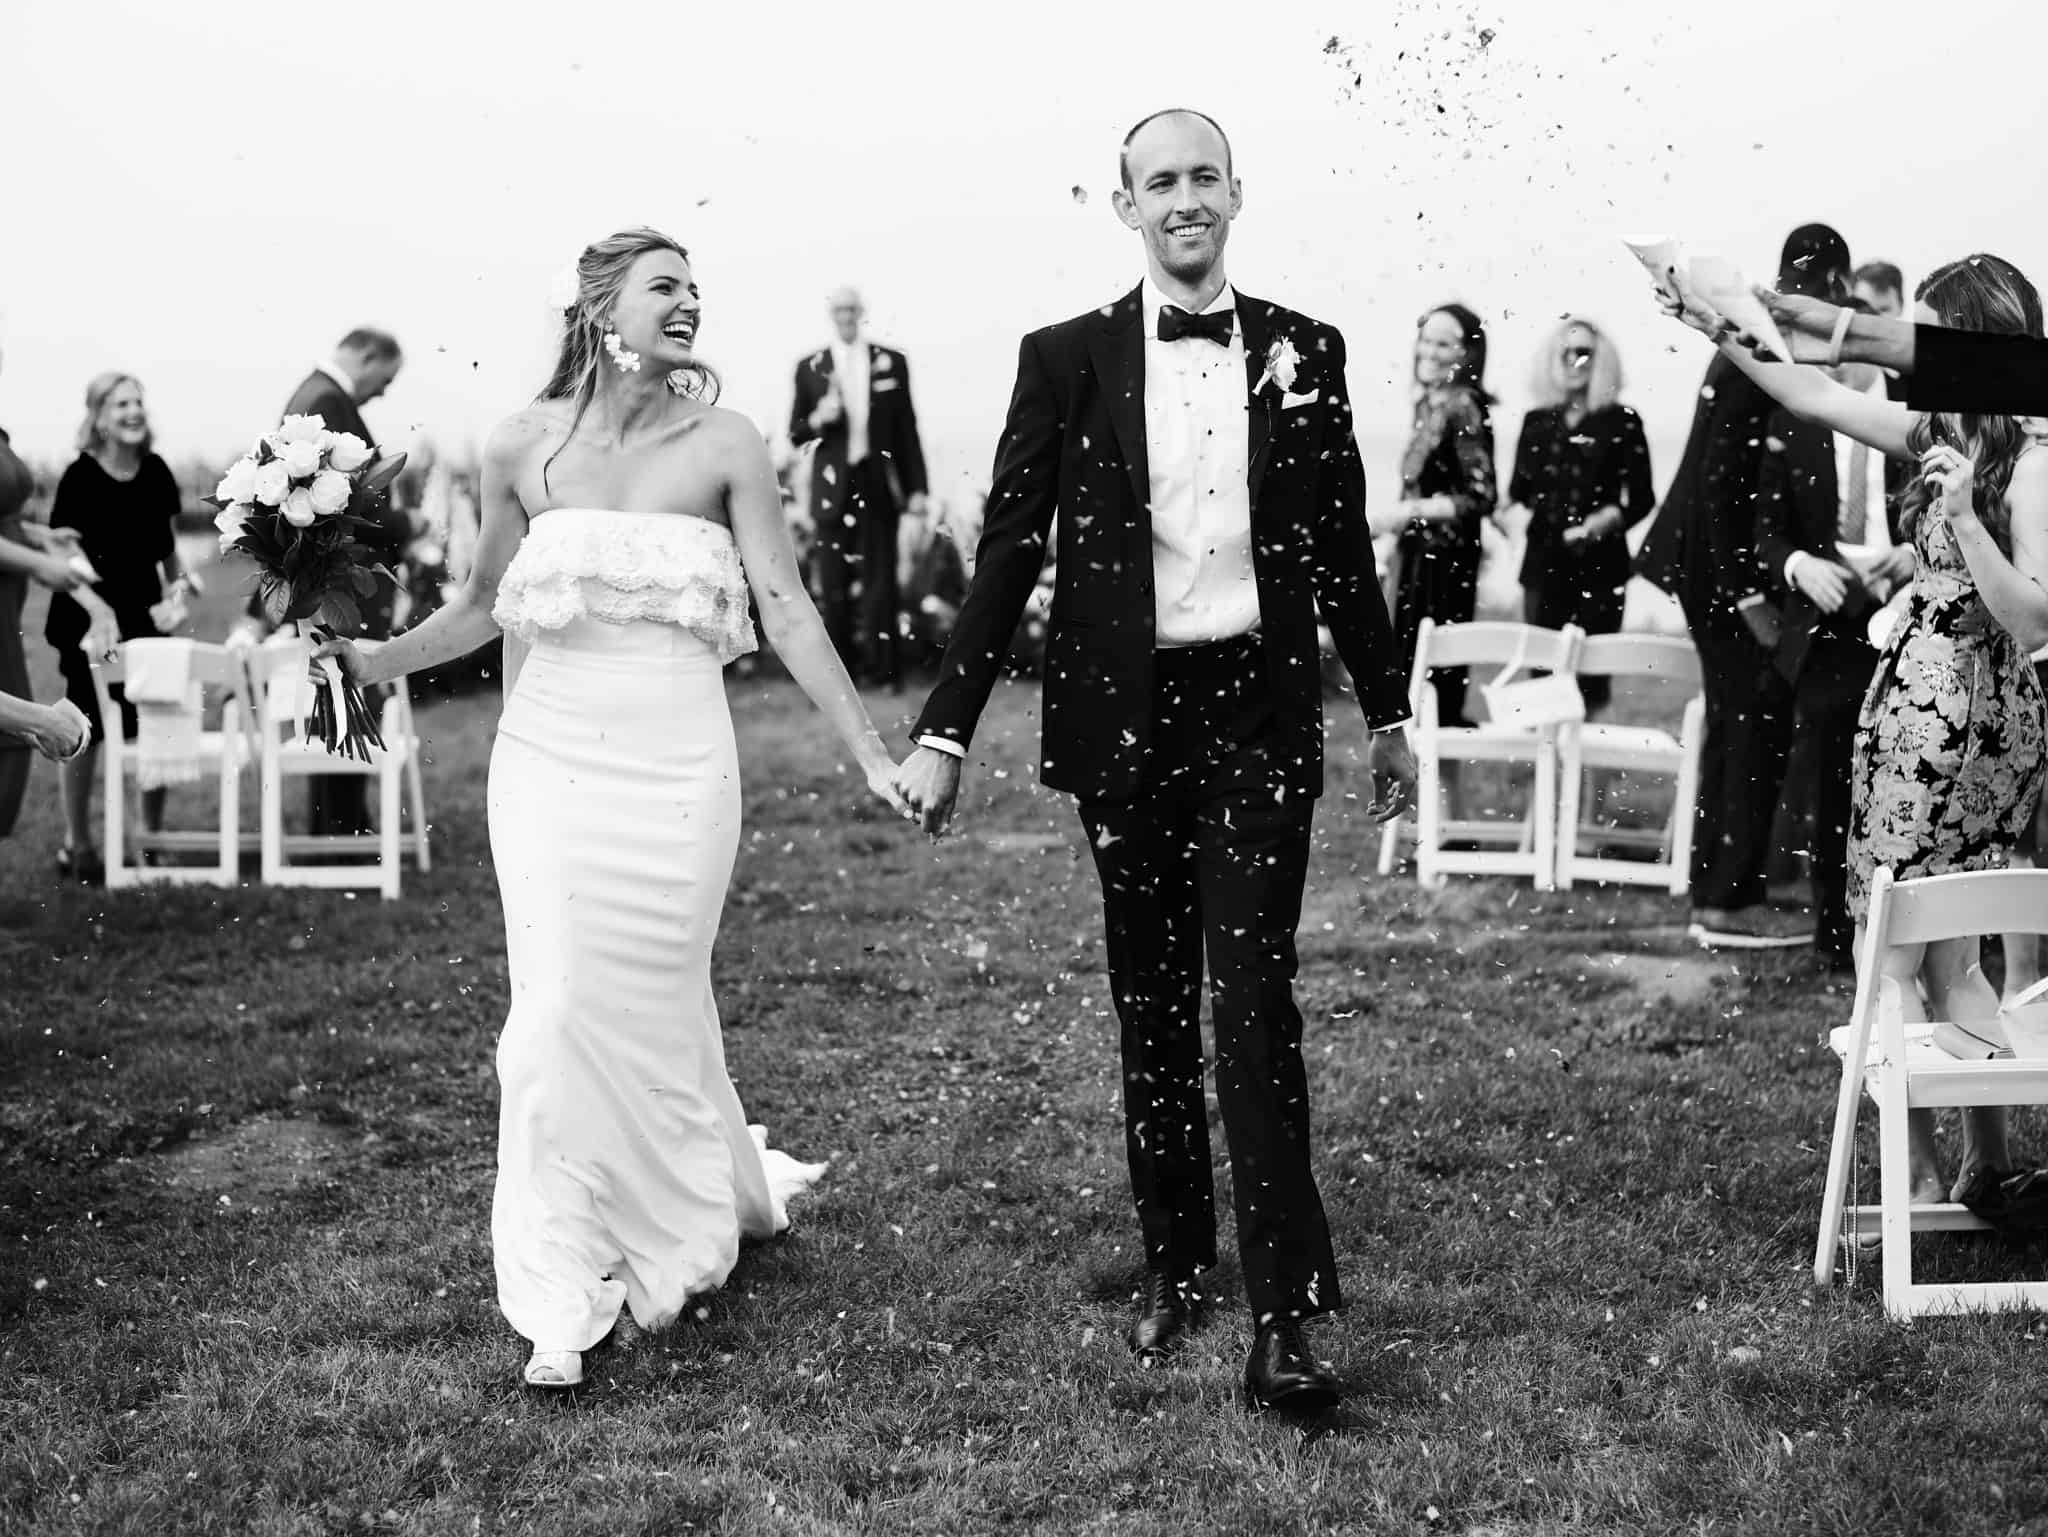 crissy field wedding in san francisco with confetti send off